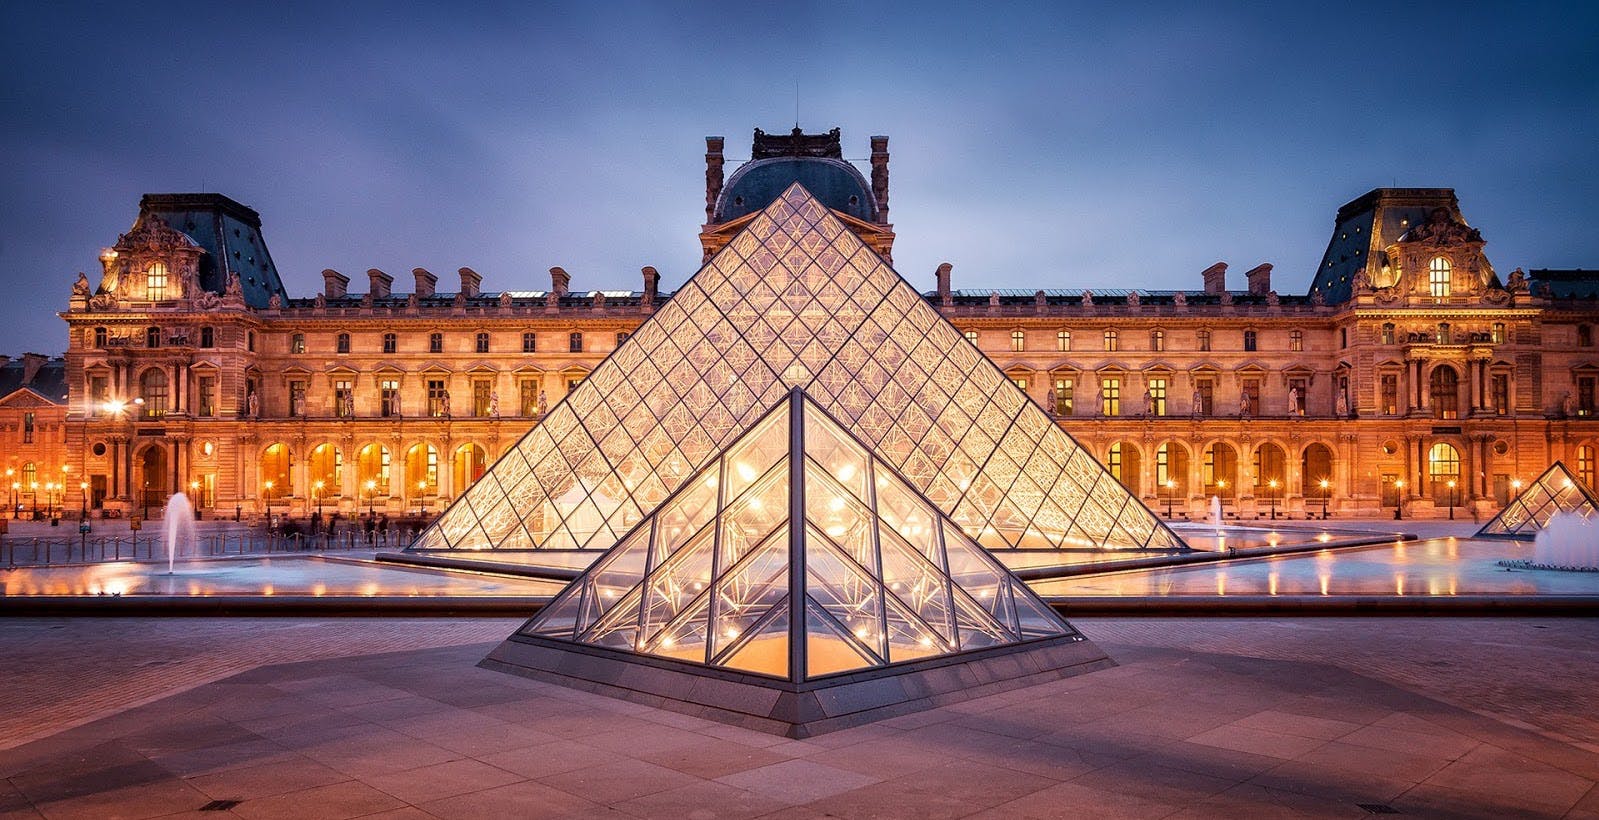 Tutte le opere del Louvre possono essere viste online, gratuitamente